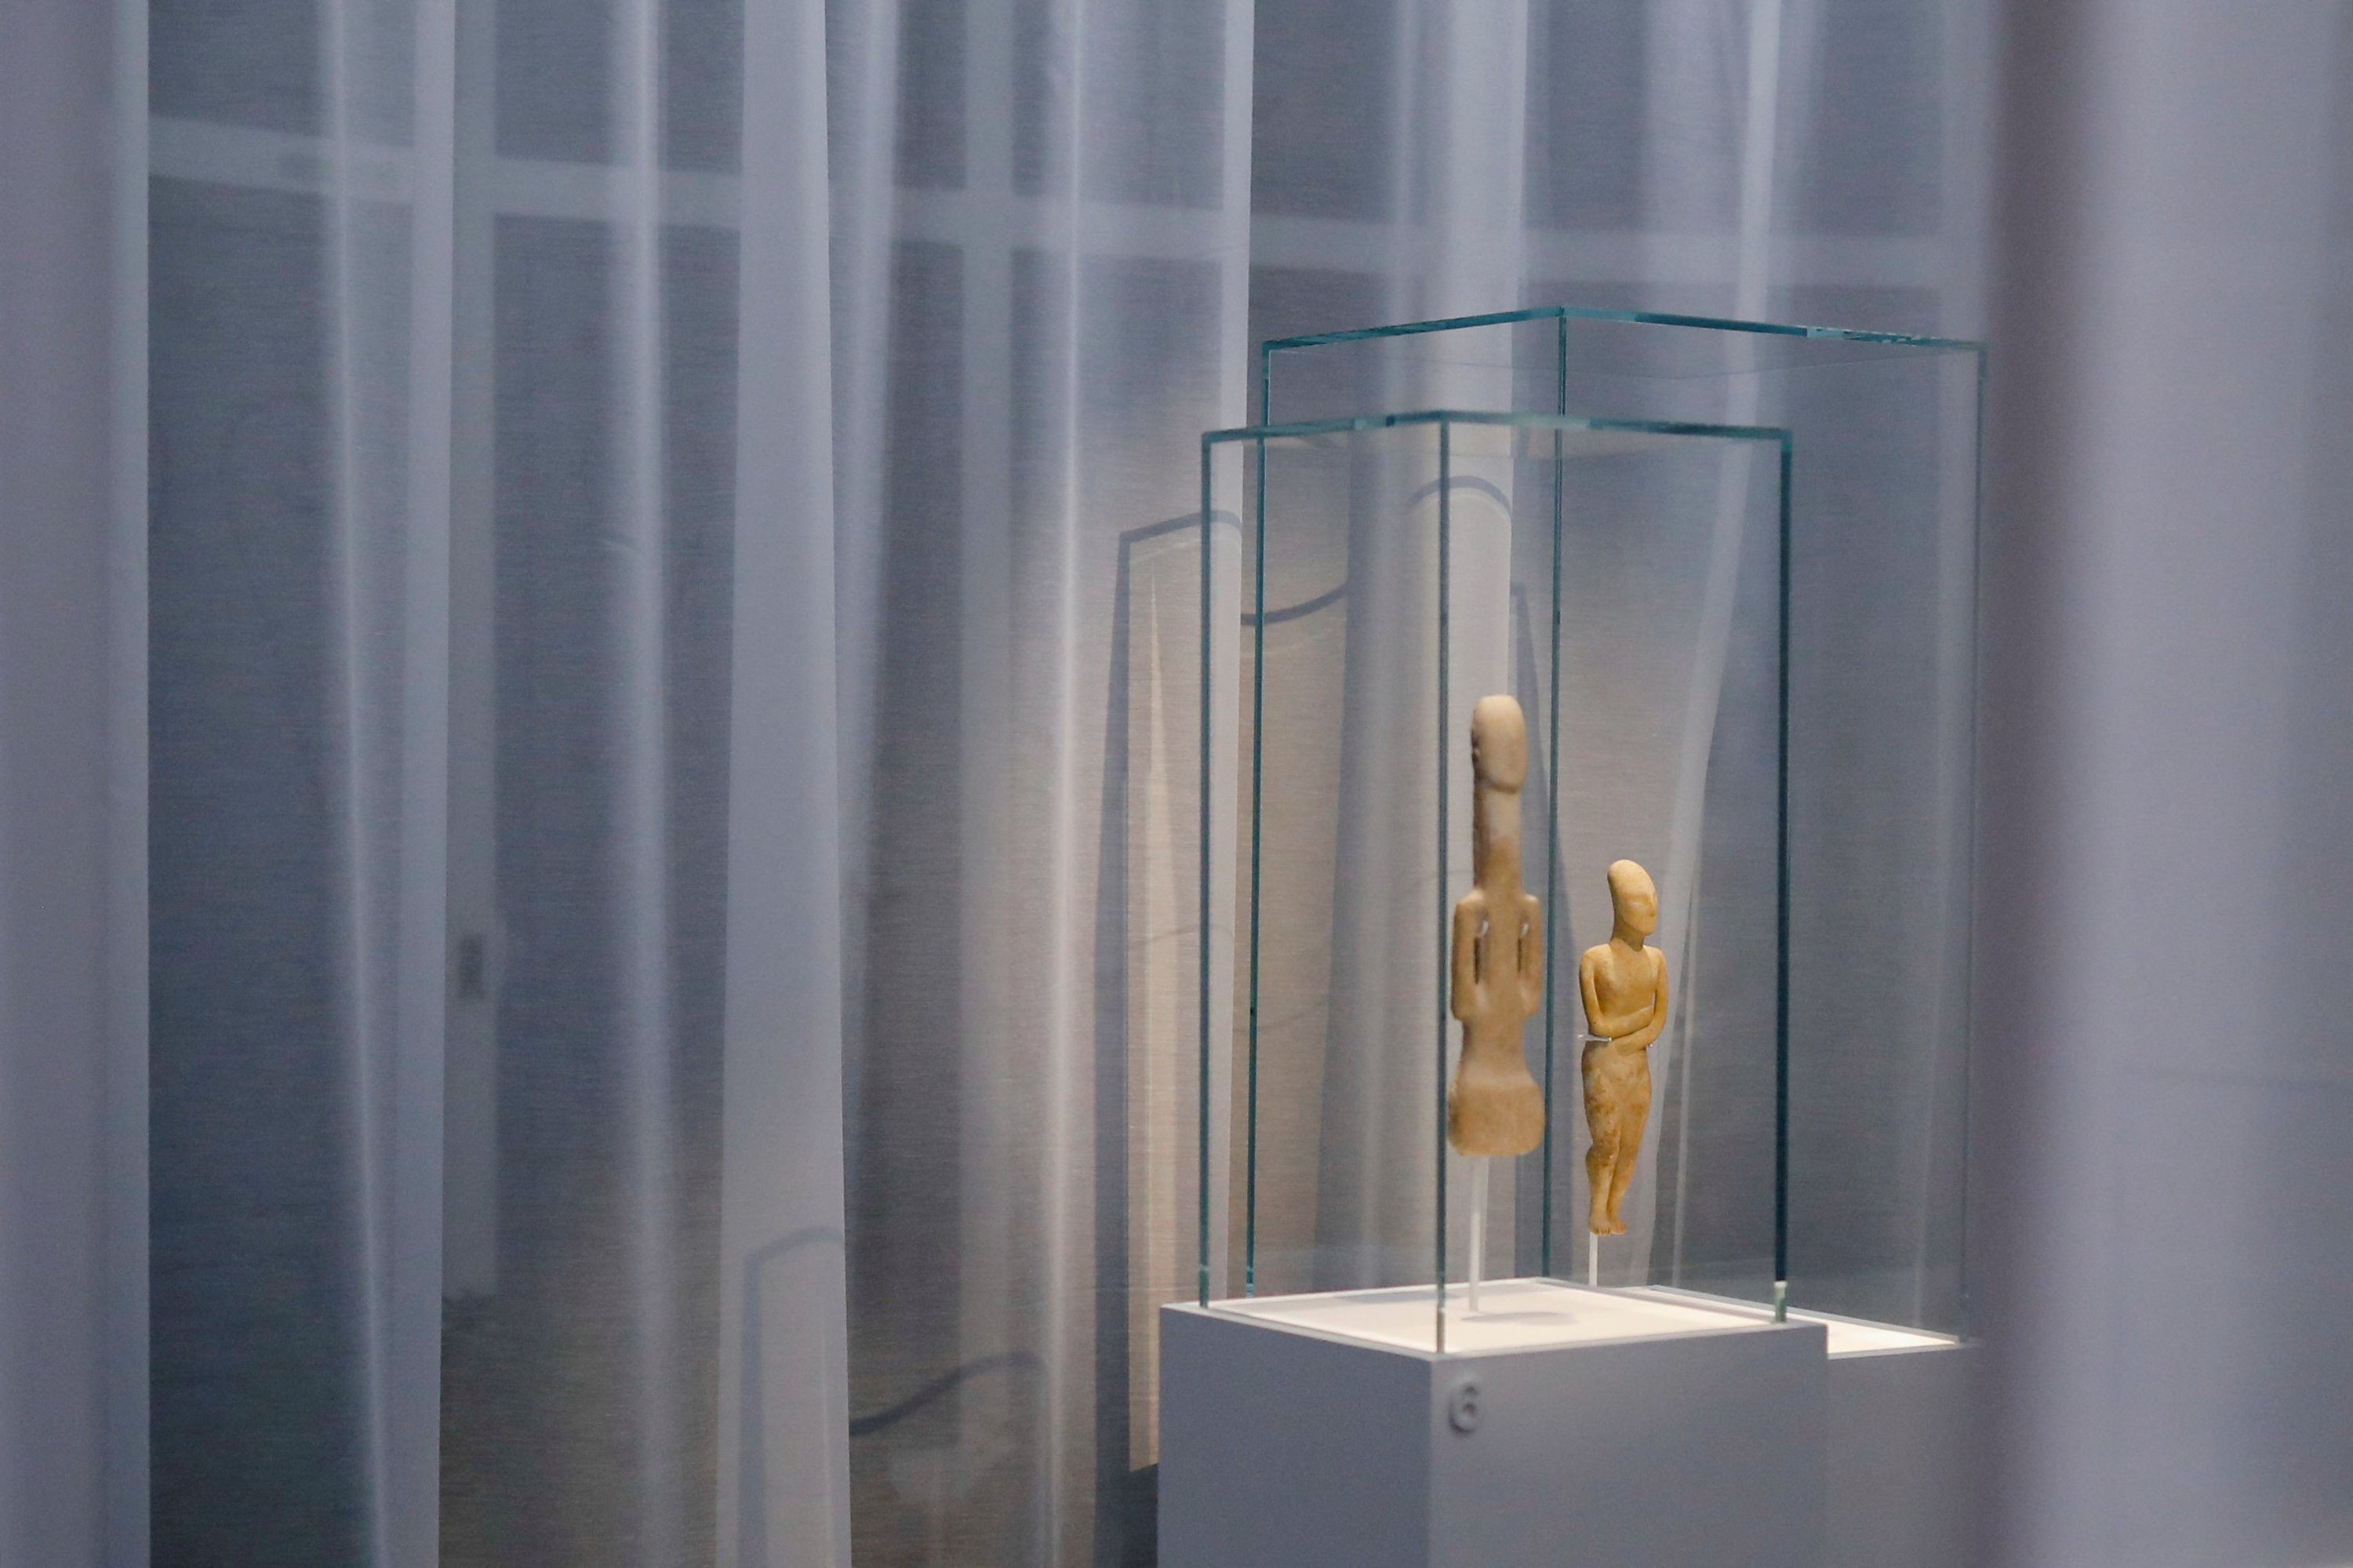 Patung-patung wanita Marmer Cycladic ditampilkan selama pembukaan pameran ''Homecoming.  Harta karun Cycladic dalam perjalanan pulang mereka'' di Museum of Cycladic Art, Athena, Yunani, 2 November 2022. (Foto Reuters)